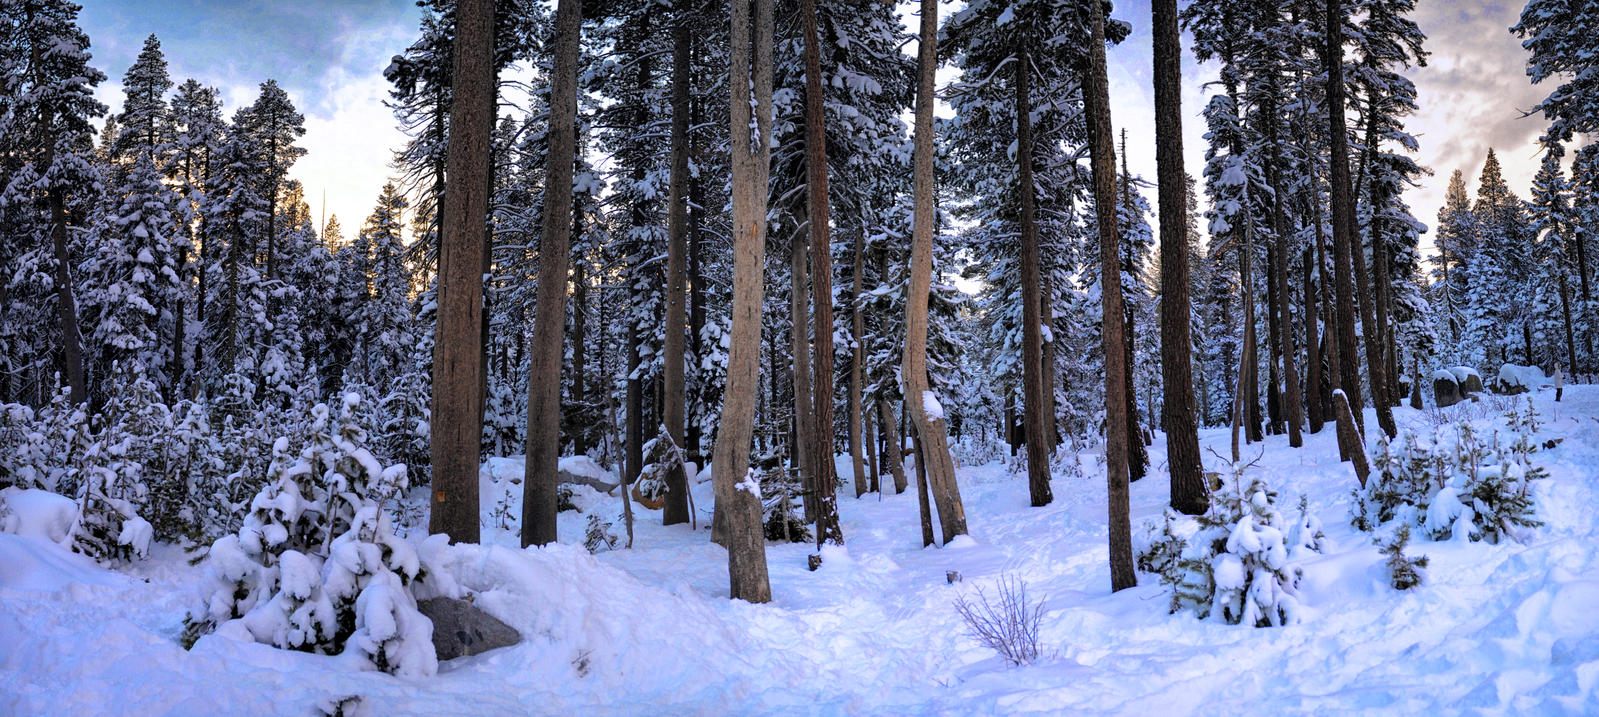 Snow trees in Tahoe